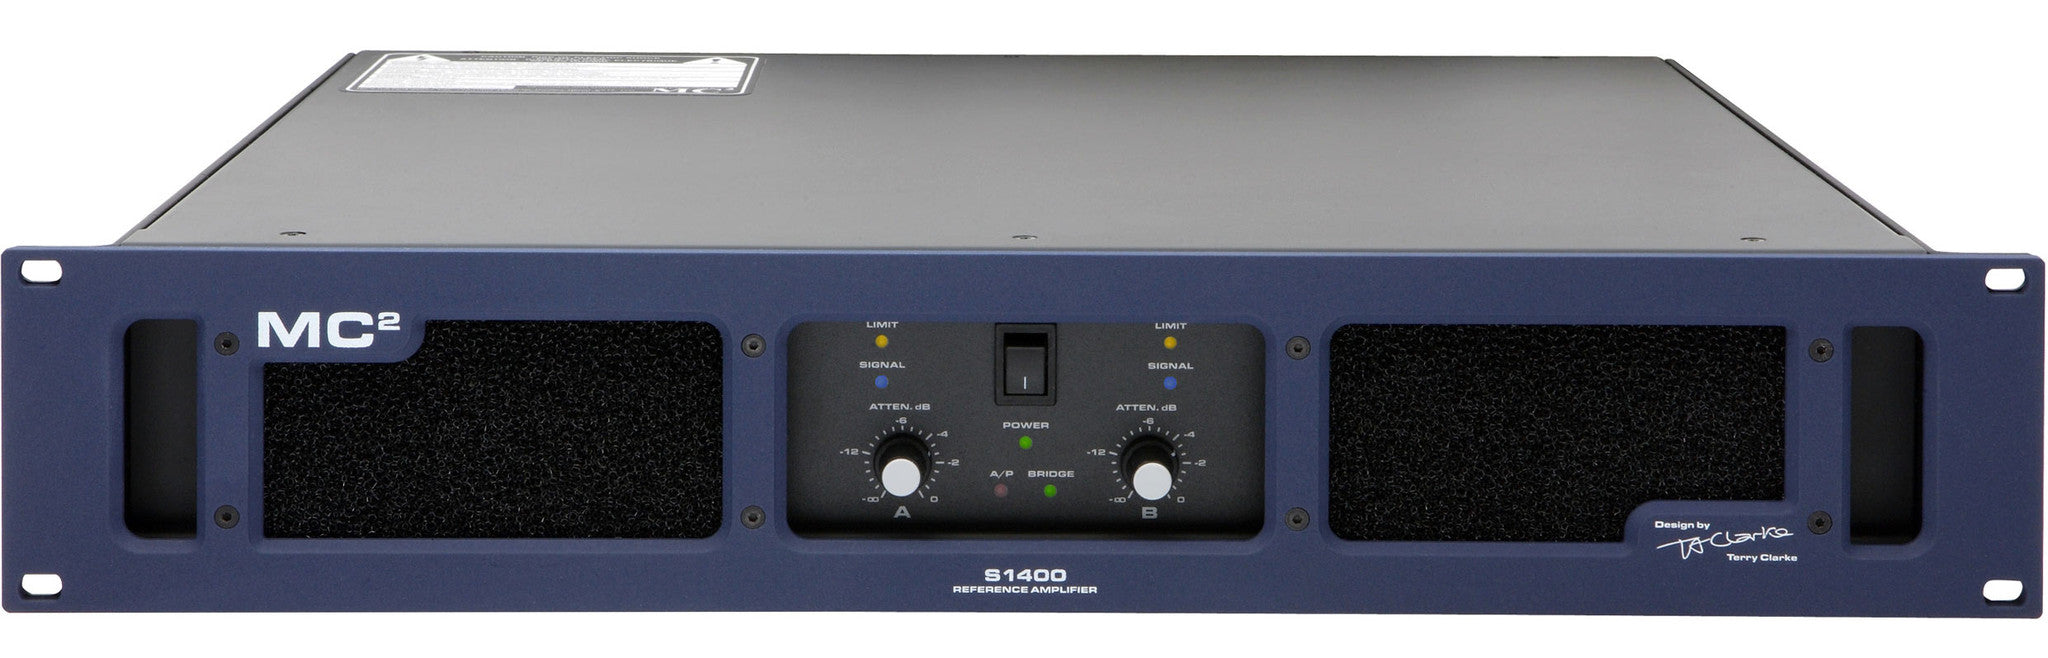 Accessories - MC2 Audio - MC2 S1400 - Professional Audio Design, Inc